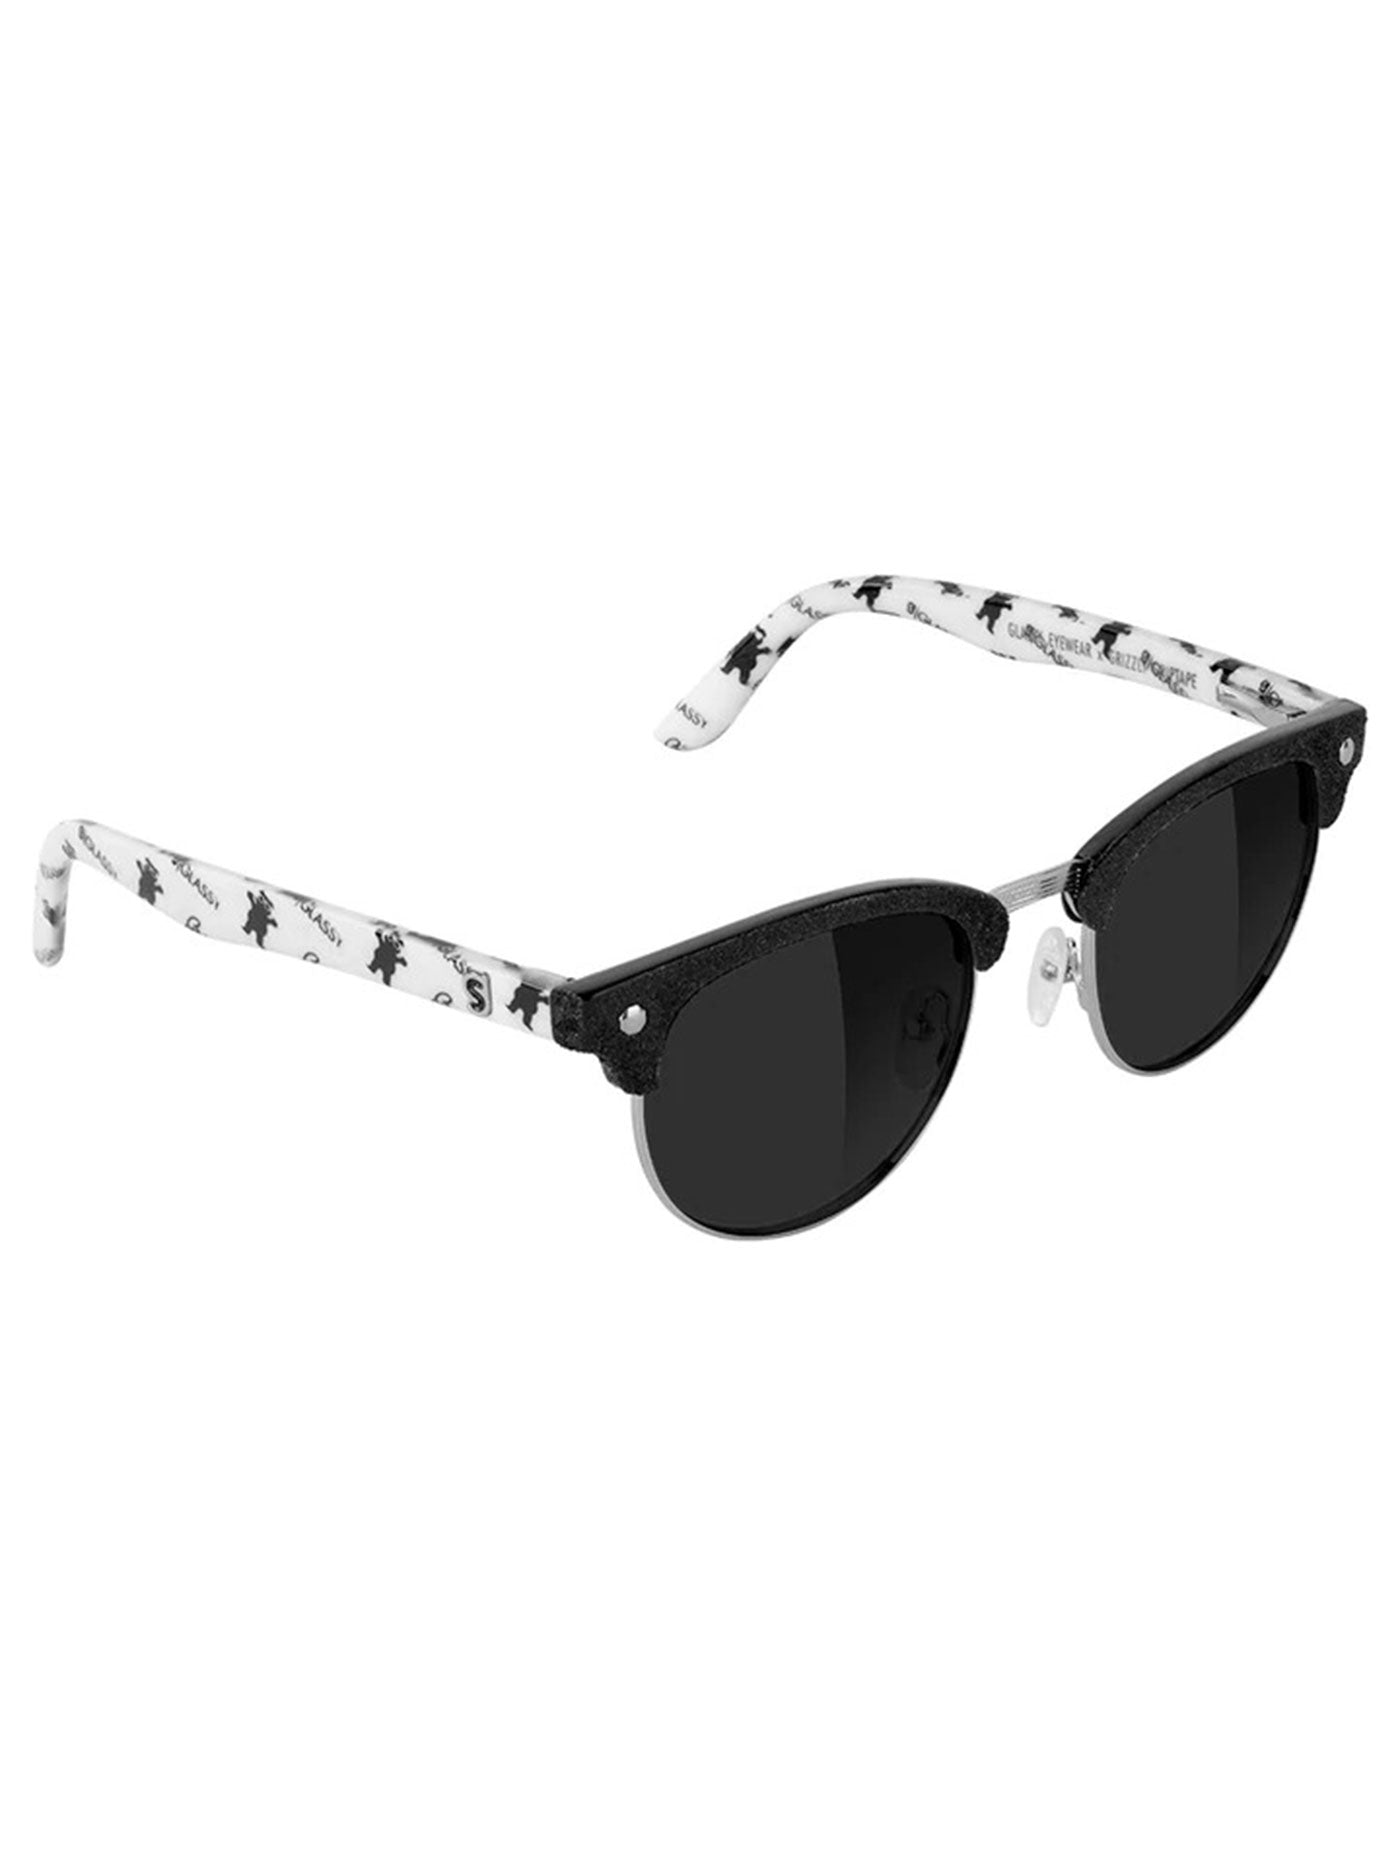 Glassy X Grizzly Polarized Sunglasses